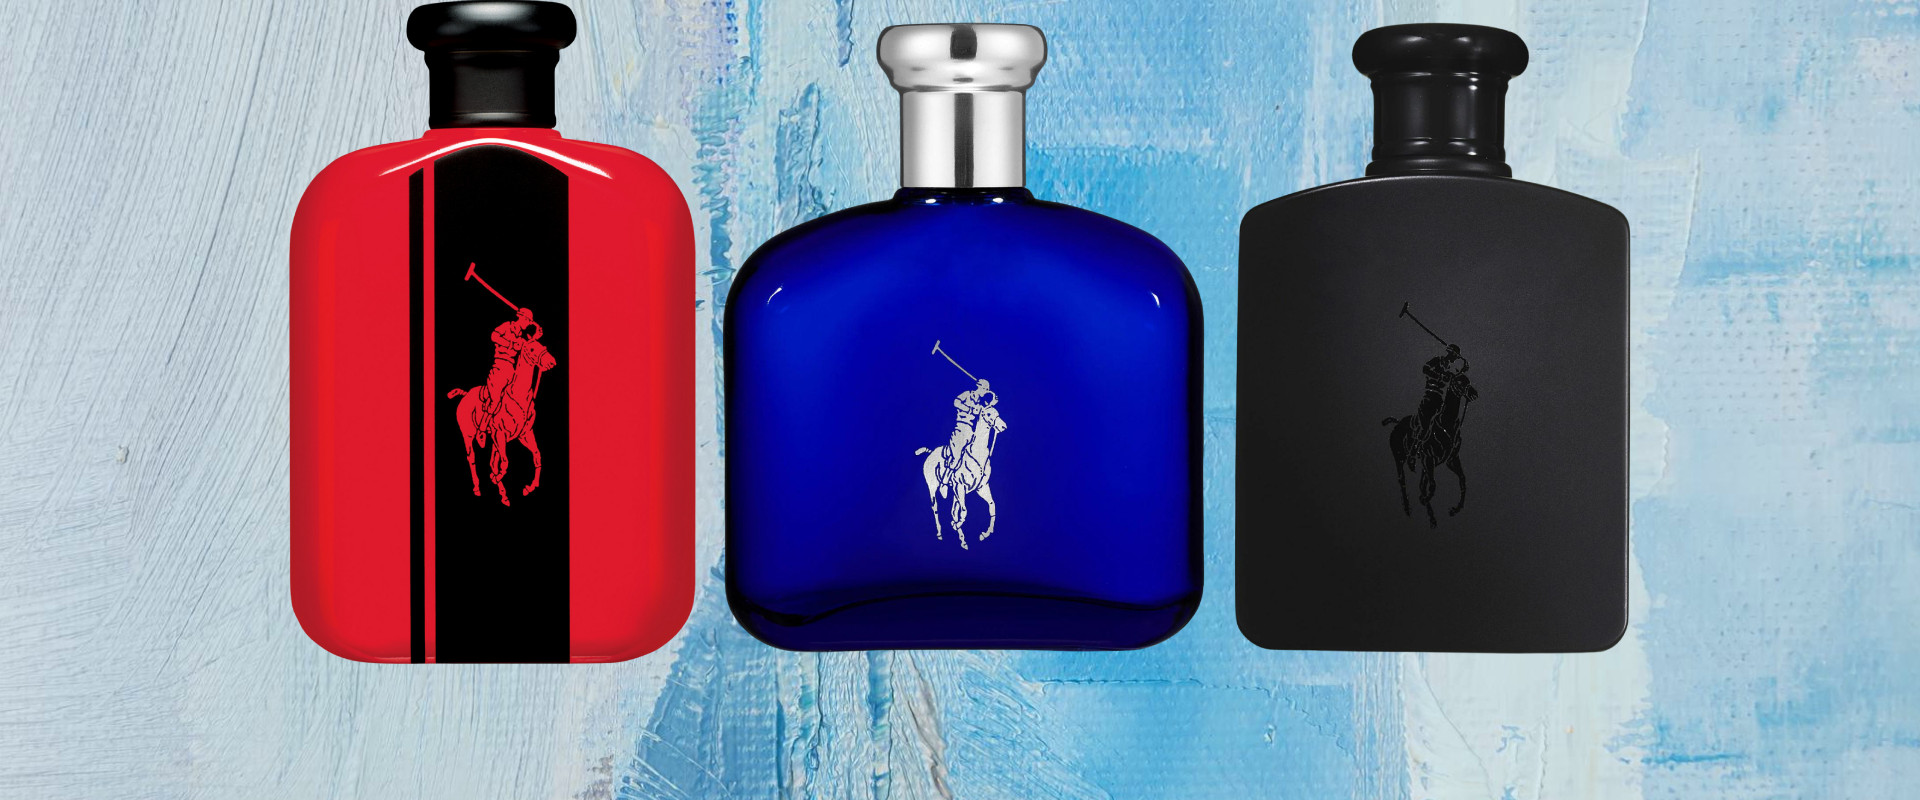 Ralph Lauren Perfume Deals: Find Your Favorite Fragrance